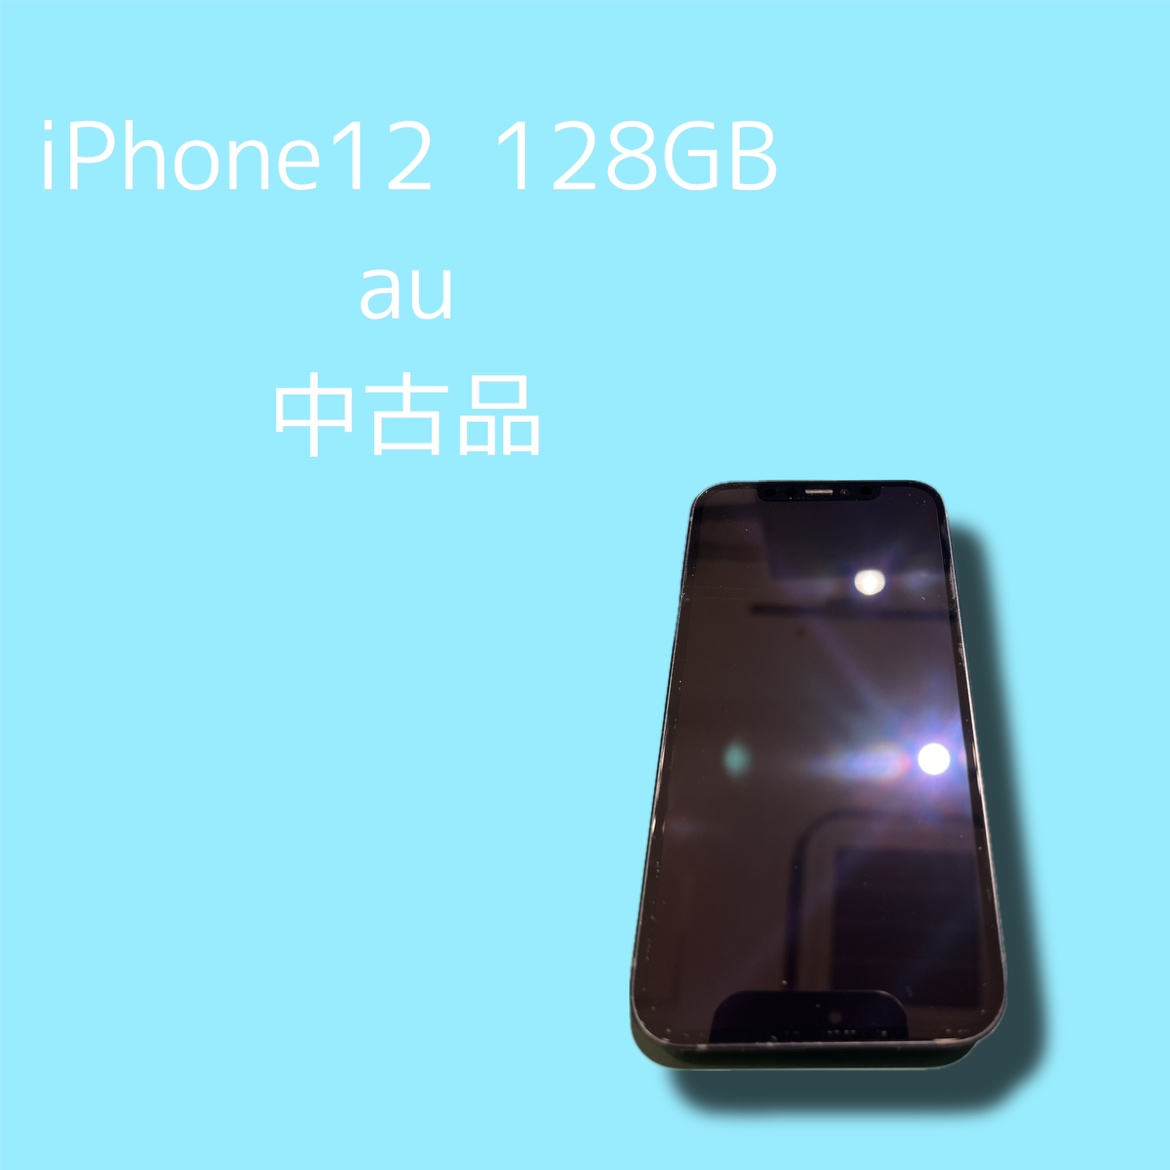 iPhone12・128GB・au・〇・中古品【天神地下街店】